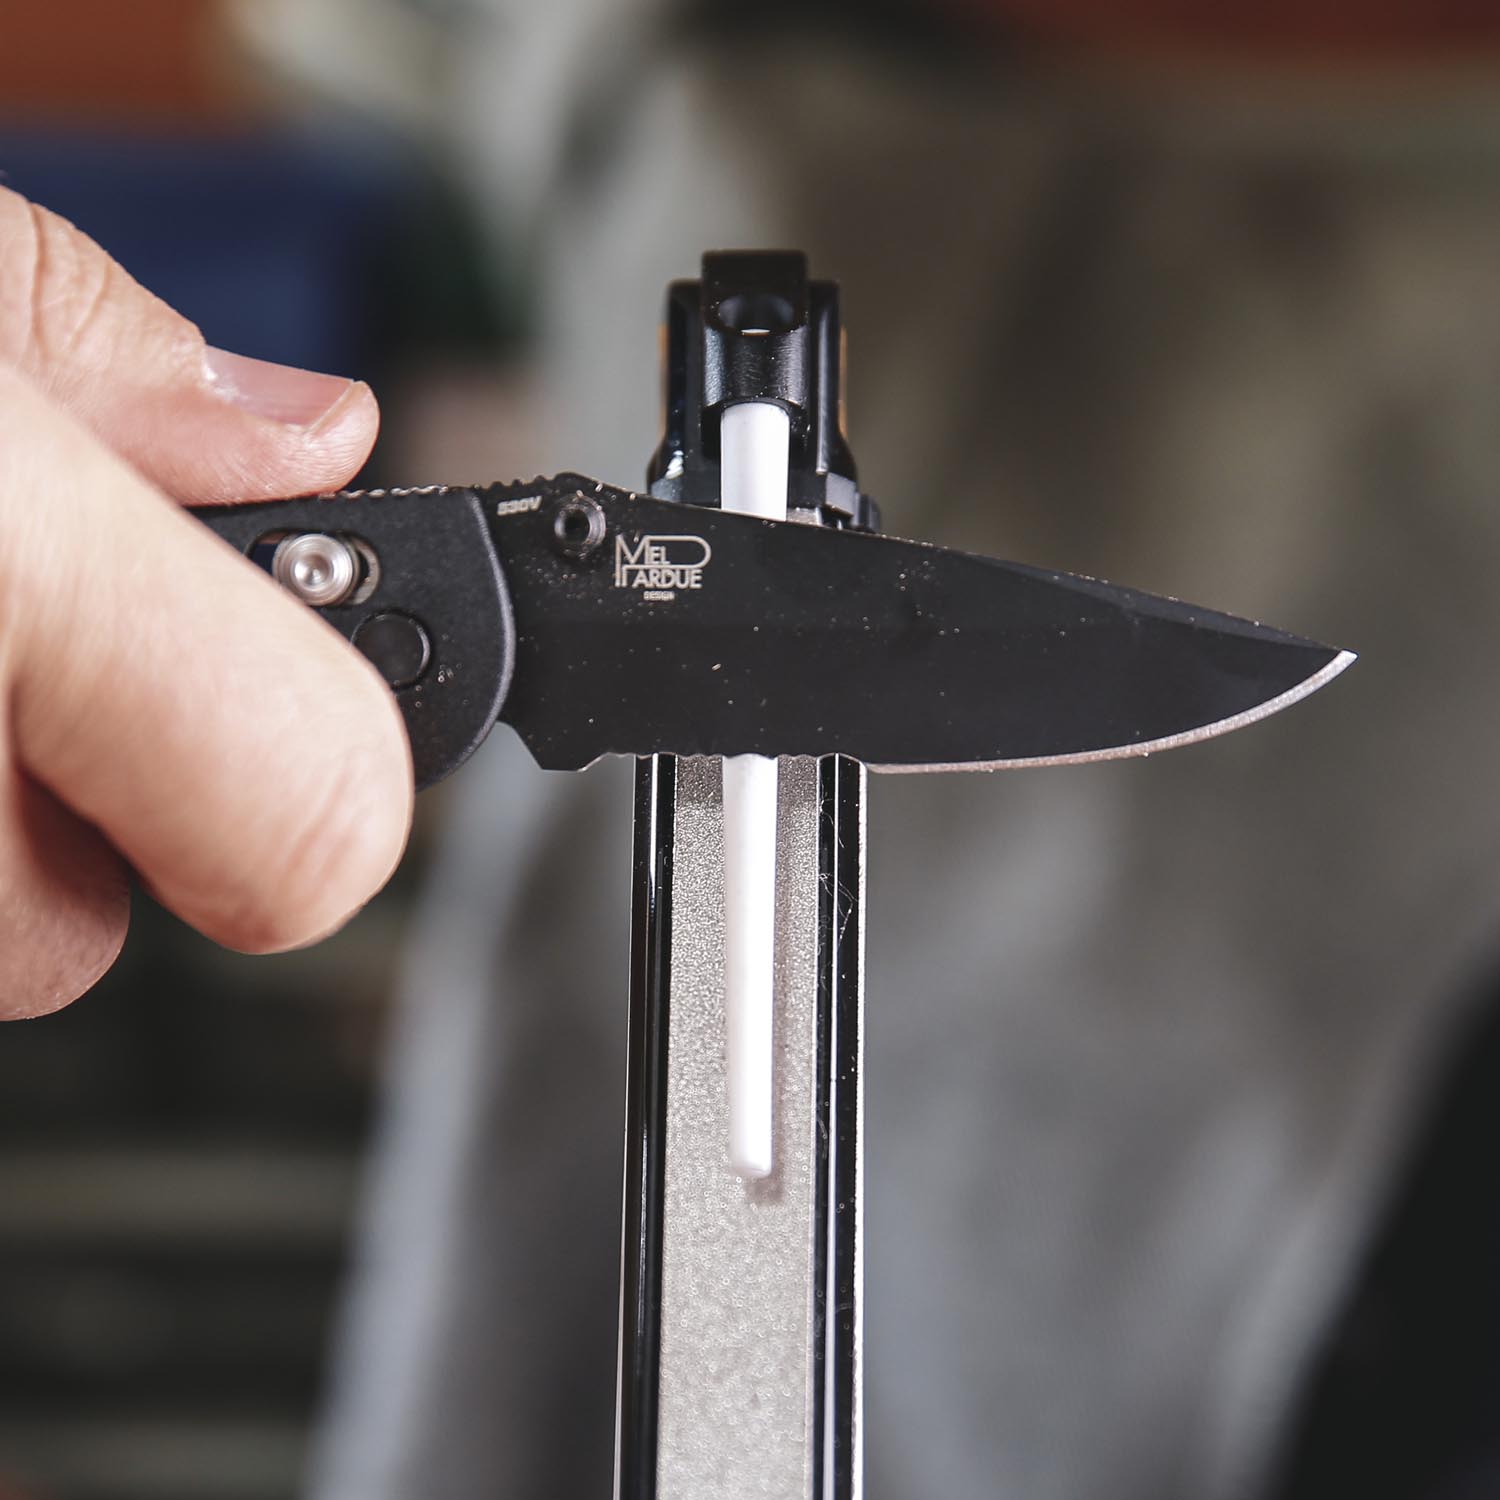 Sharper Blades with Less Effort: The Work Sharp Rolling Knife Sharpener